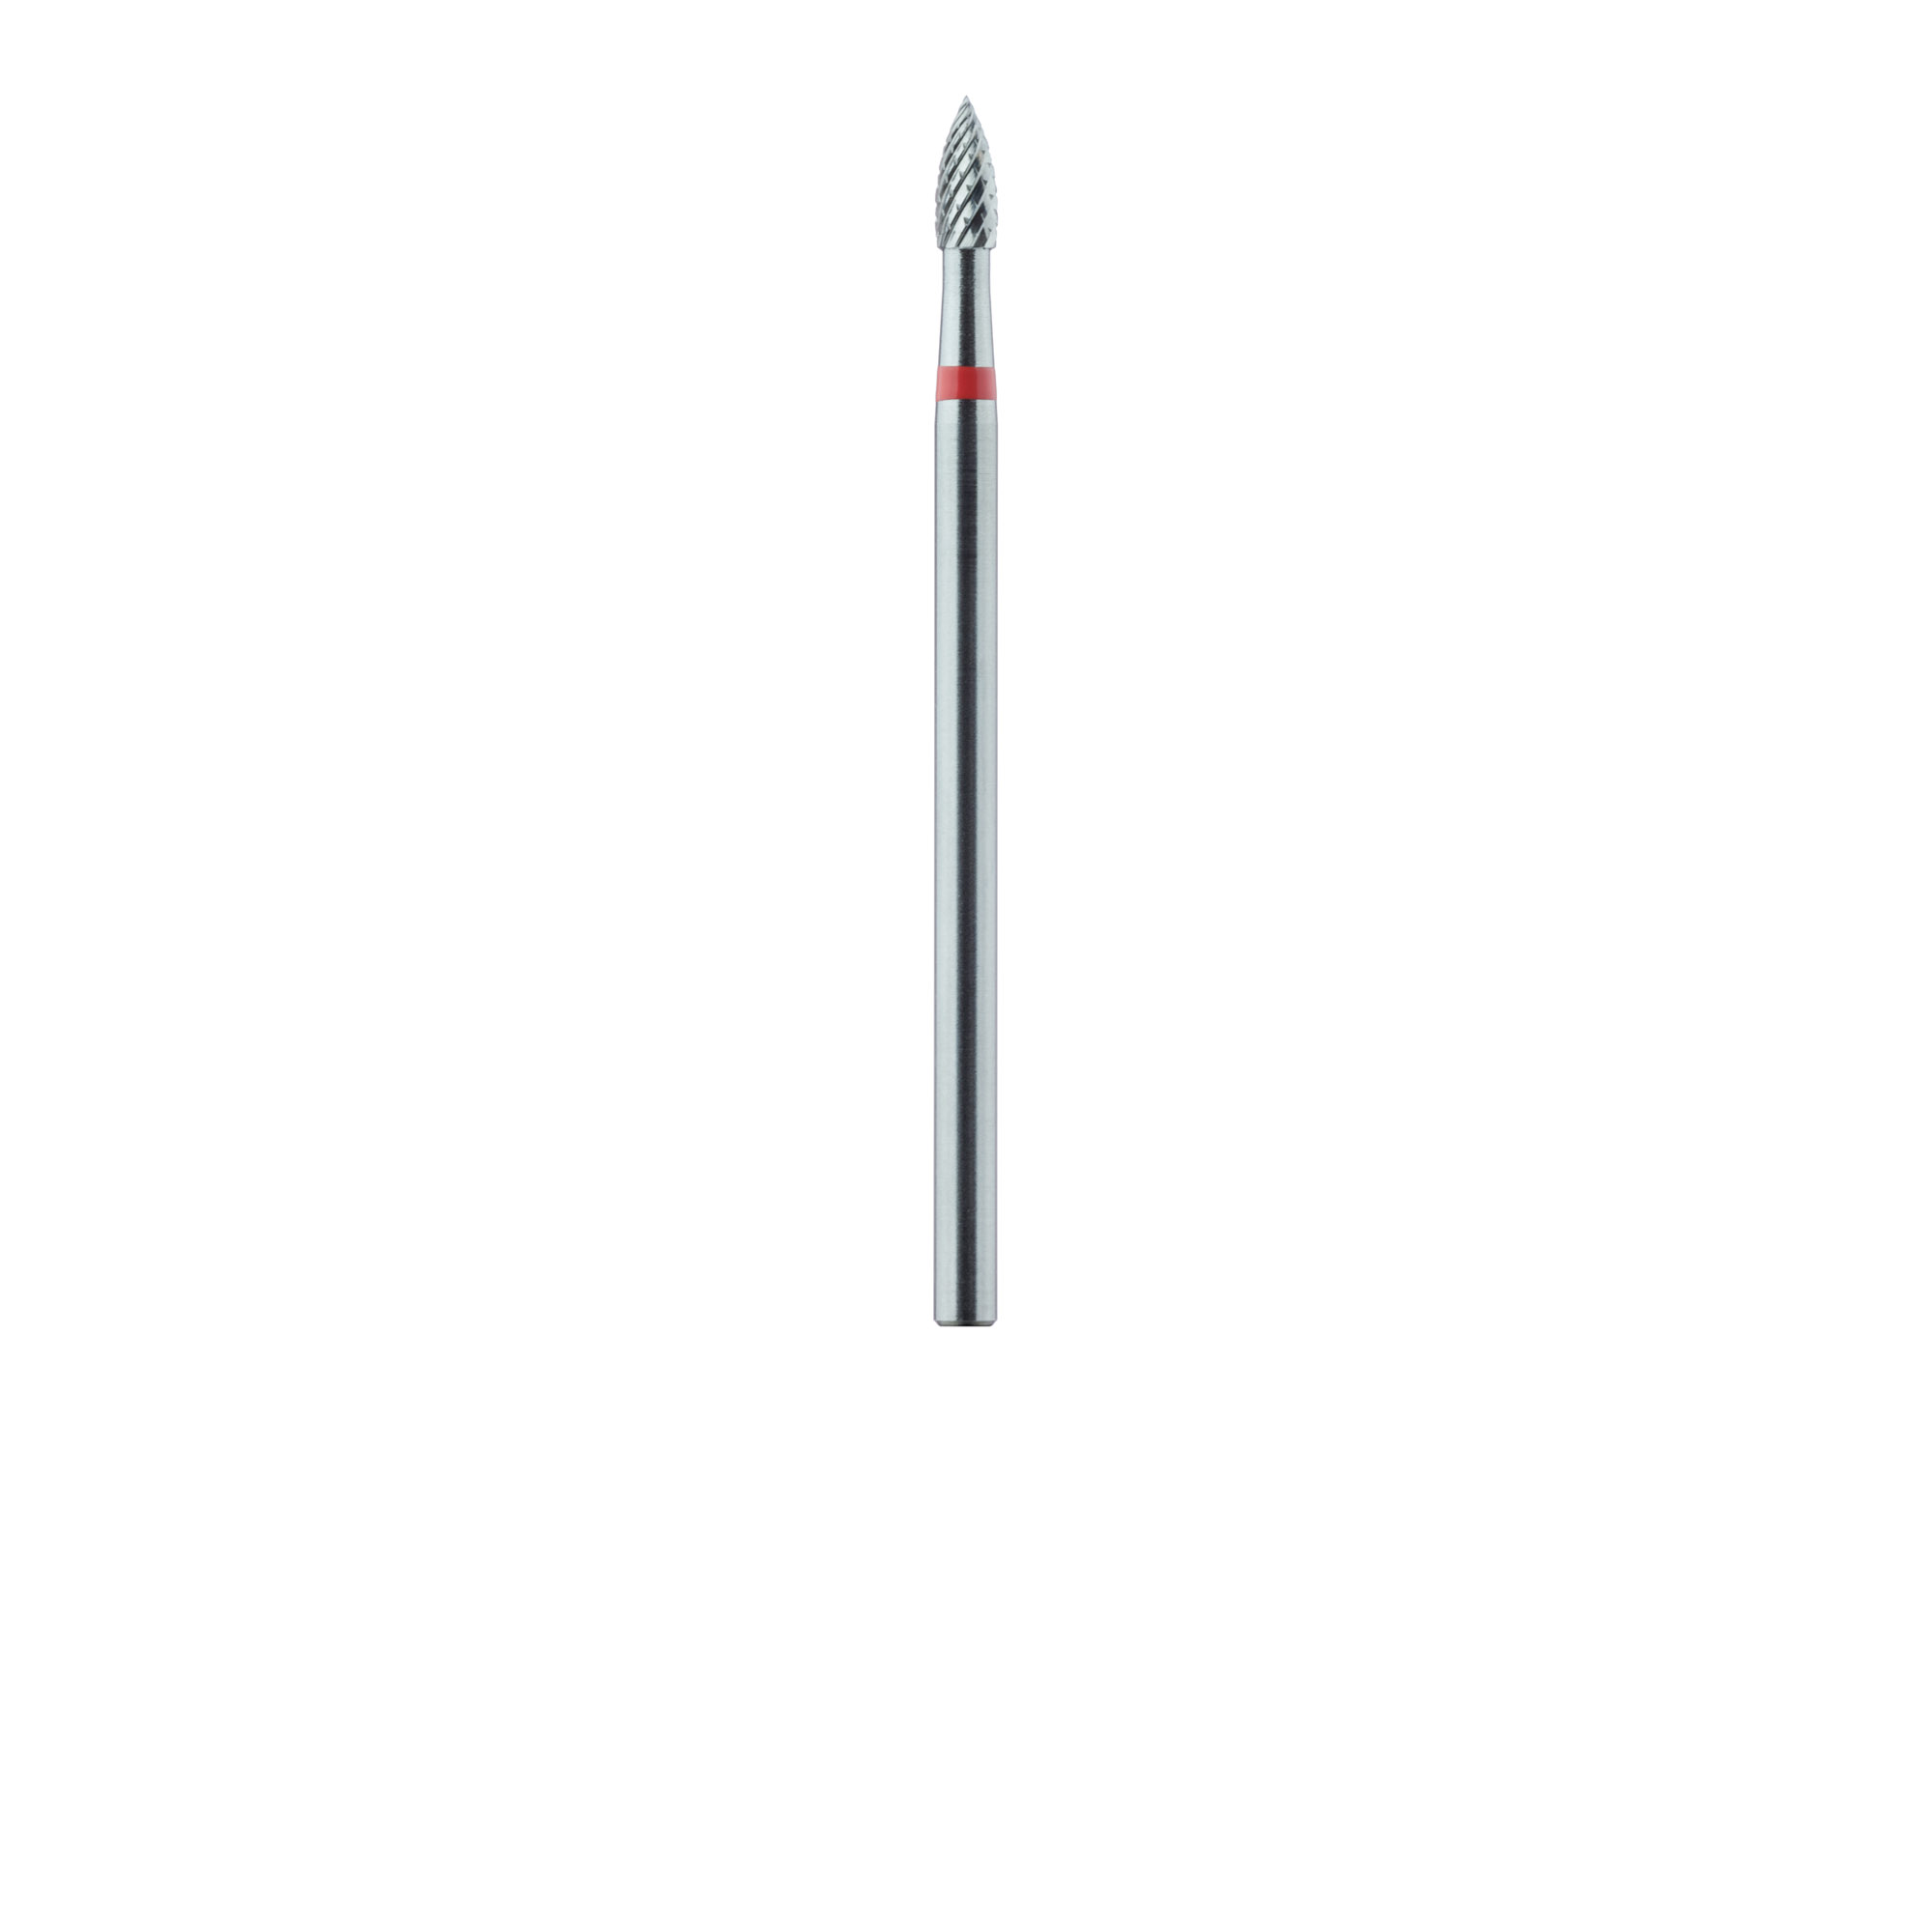 HM78MF-023-HP Carbide Cutter, Fine, Cross Cut, Small Flame, 2.3mm Ø, HP